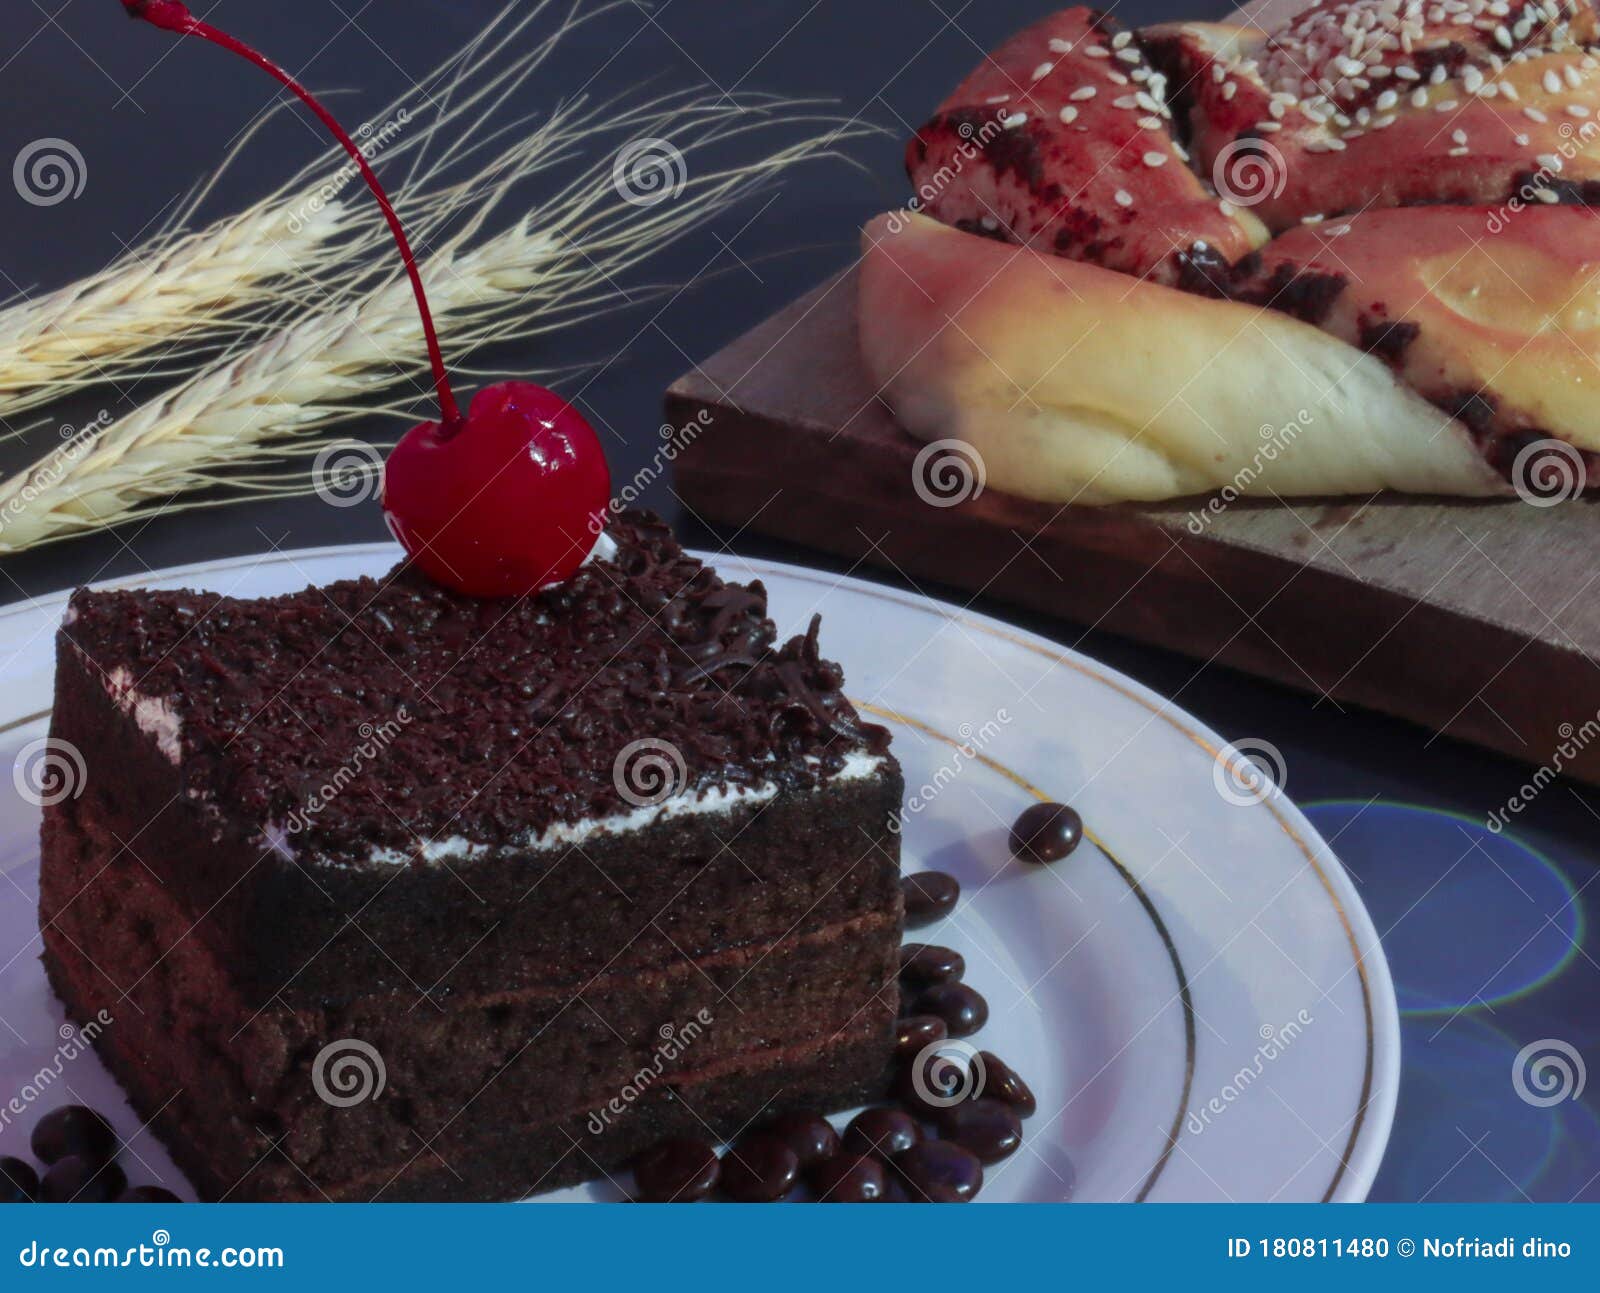 樱桃巧克力蛋糕 库存图片. 图片 包括有 食物, 膳食, 制动手, 巧克力, 果子, 快餐, 产物, 烹调 - 180820119